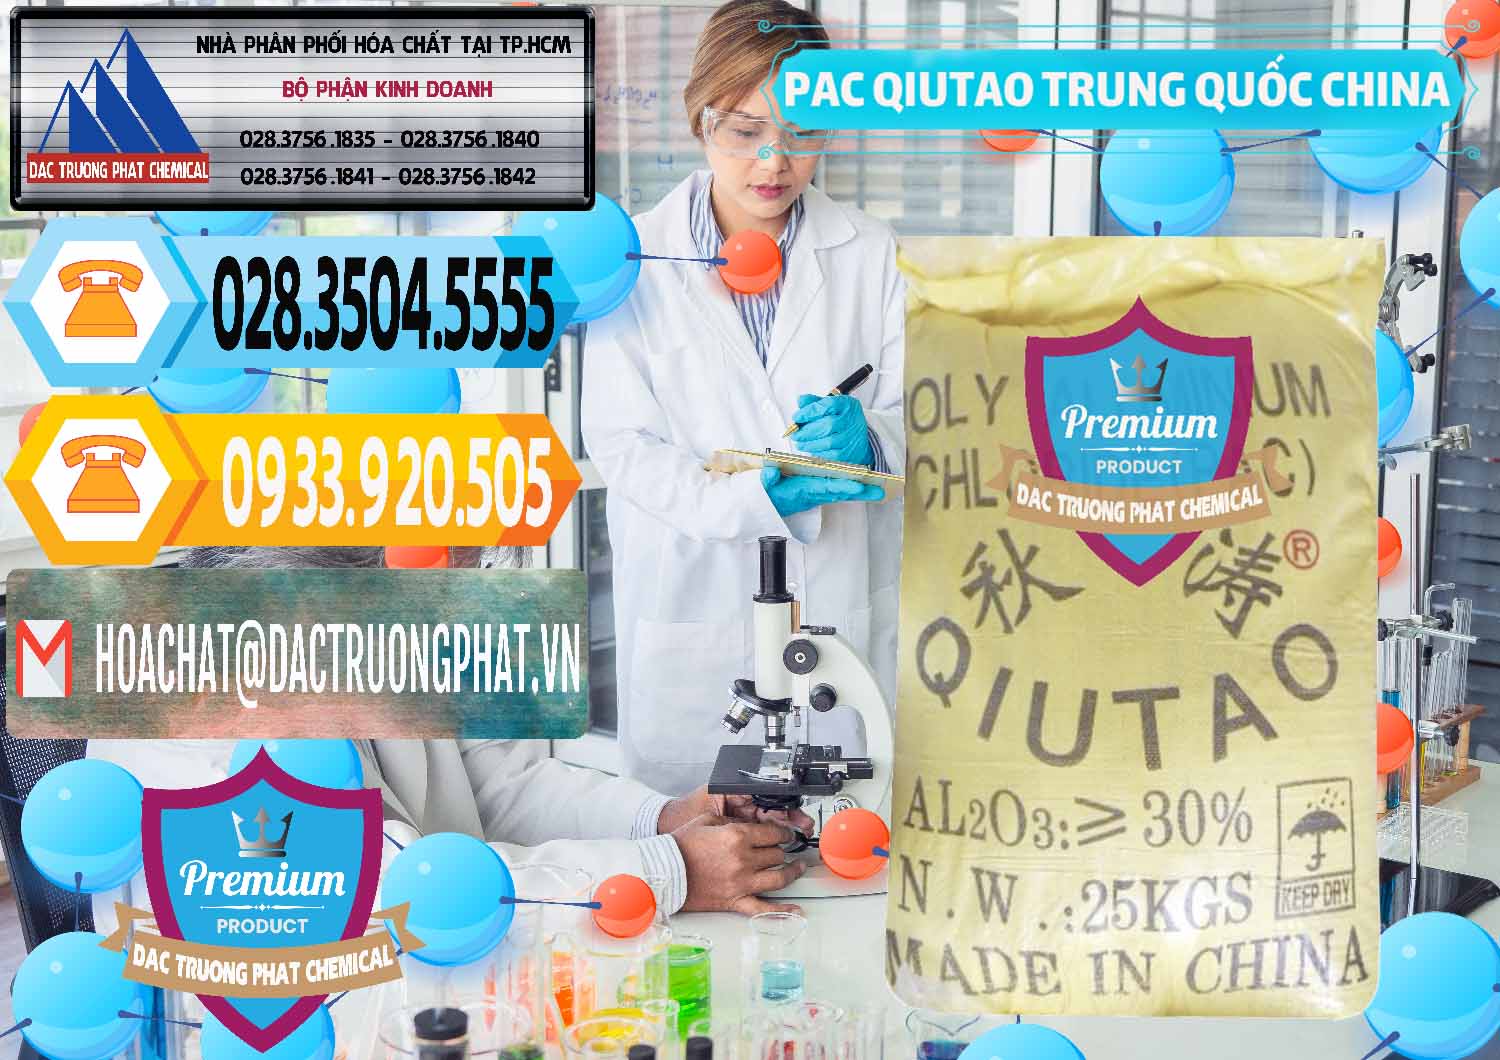 Nơi chuyên kinh doanh và bán PAC - Polyaluminium Chloride Qiutao Trung Quốc China - 0267 - Công ty chuyên cung ứng _ phân phối hóa chất tại TP.HCM - hoachattayrua.net